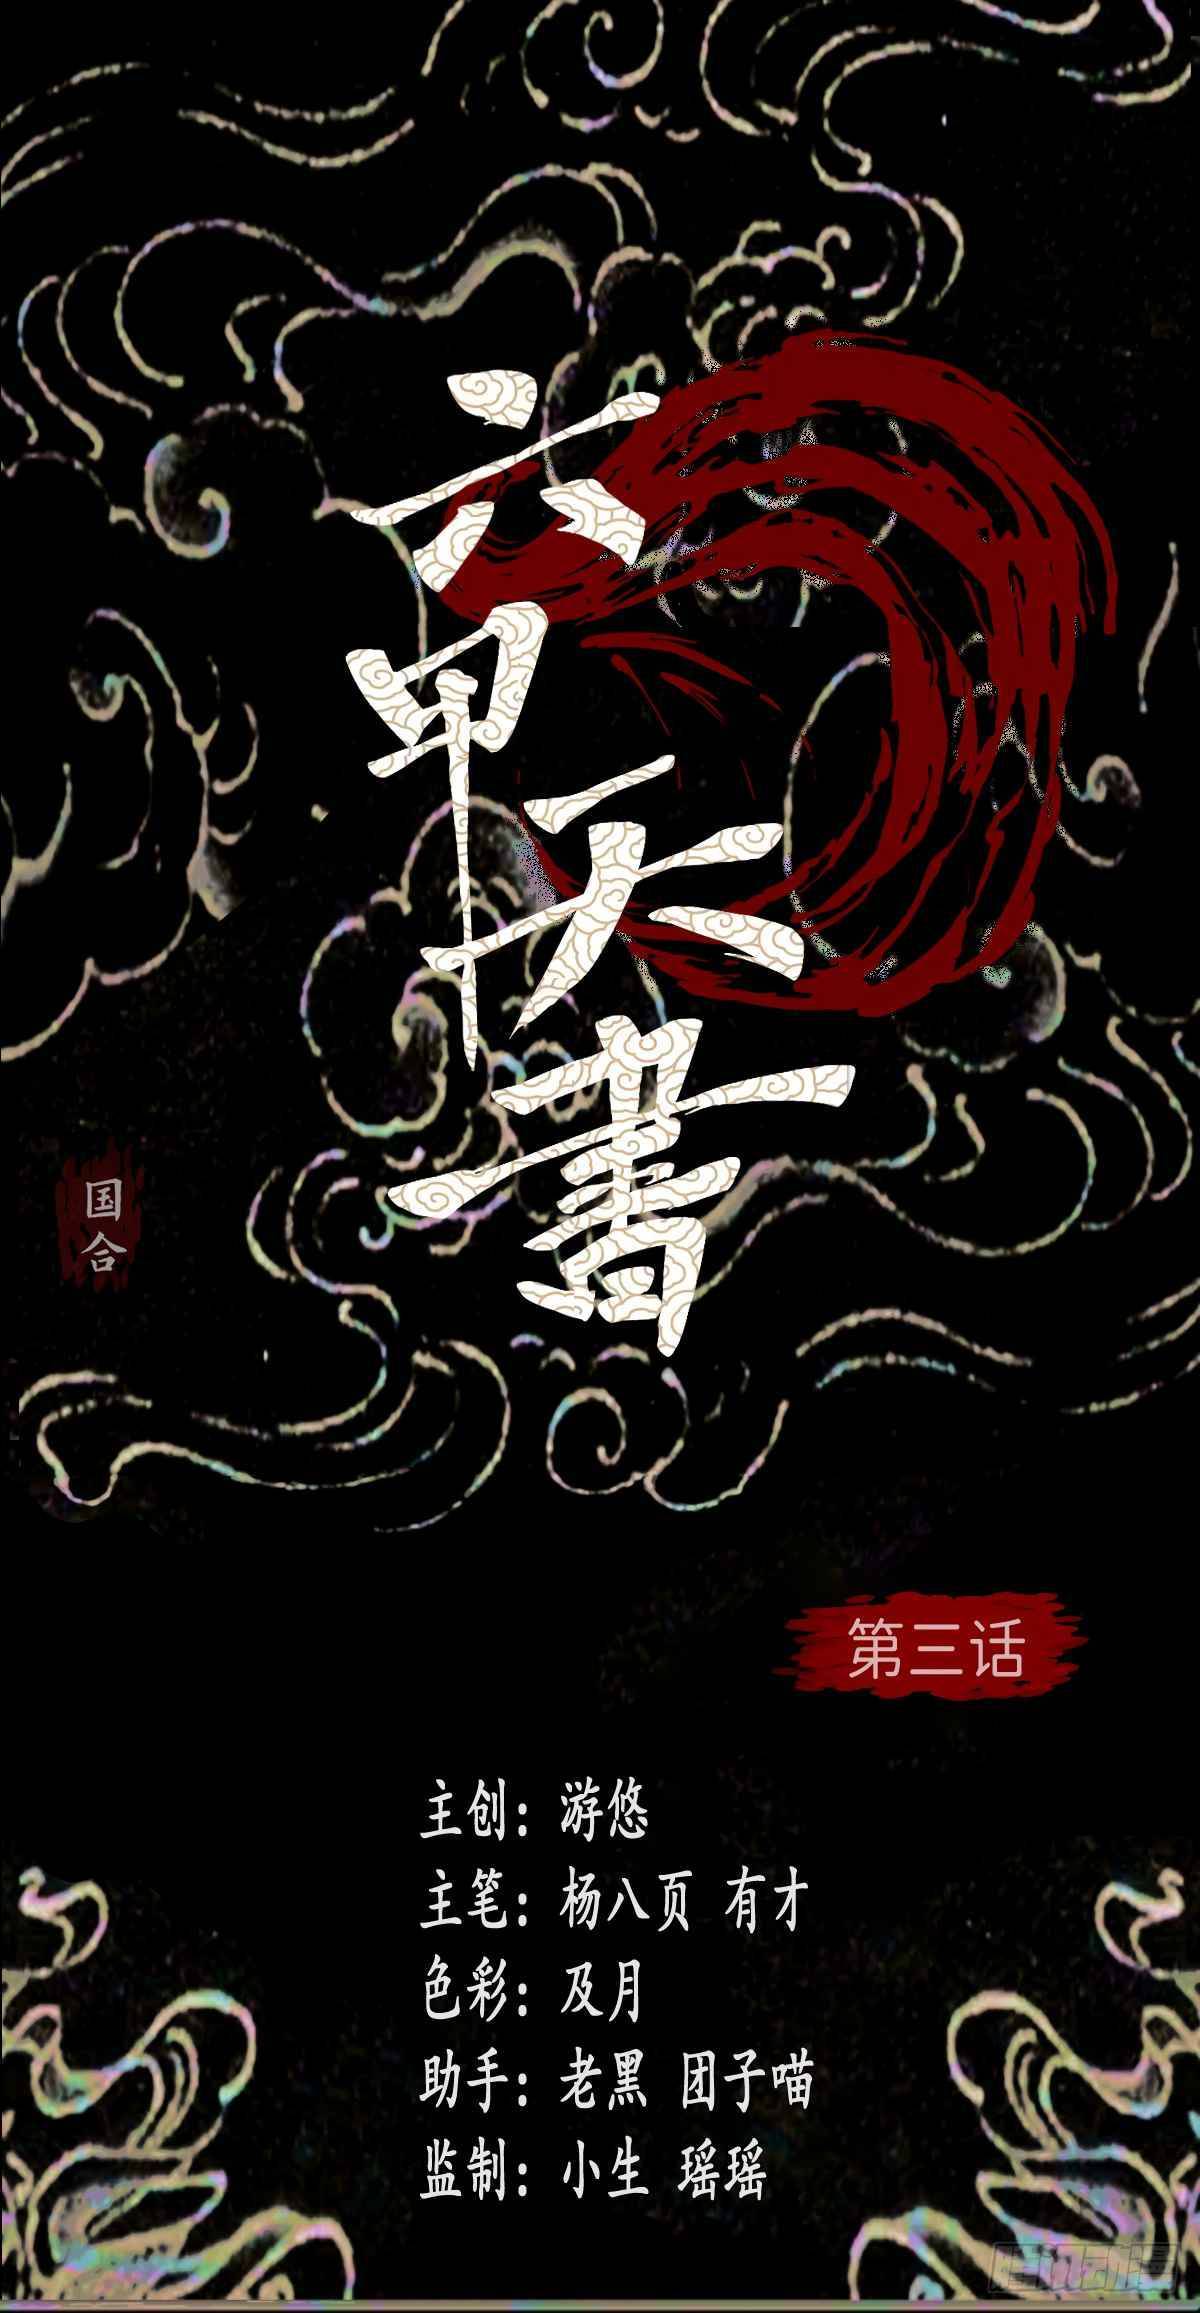 Liu Jia Book of Heaven Chapter 1